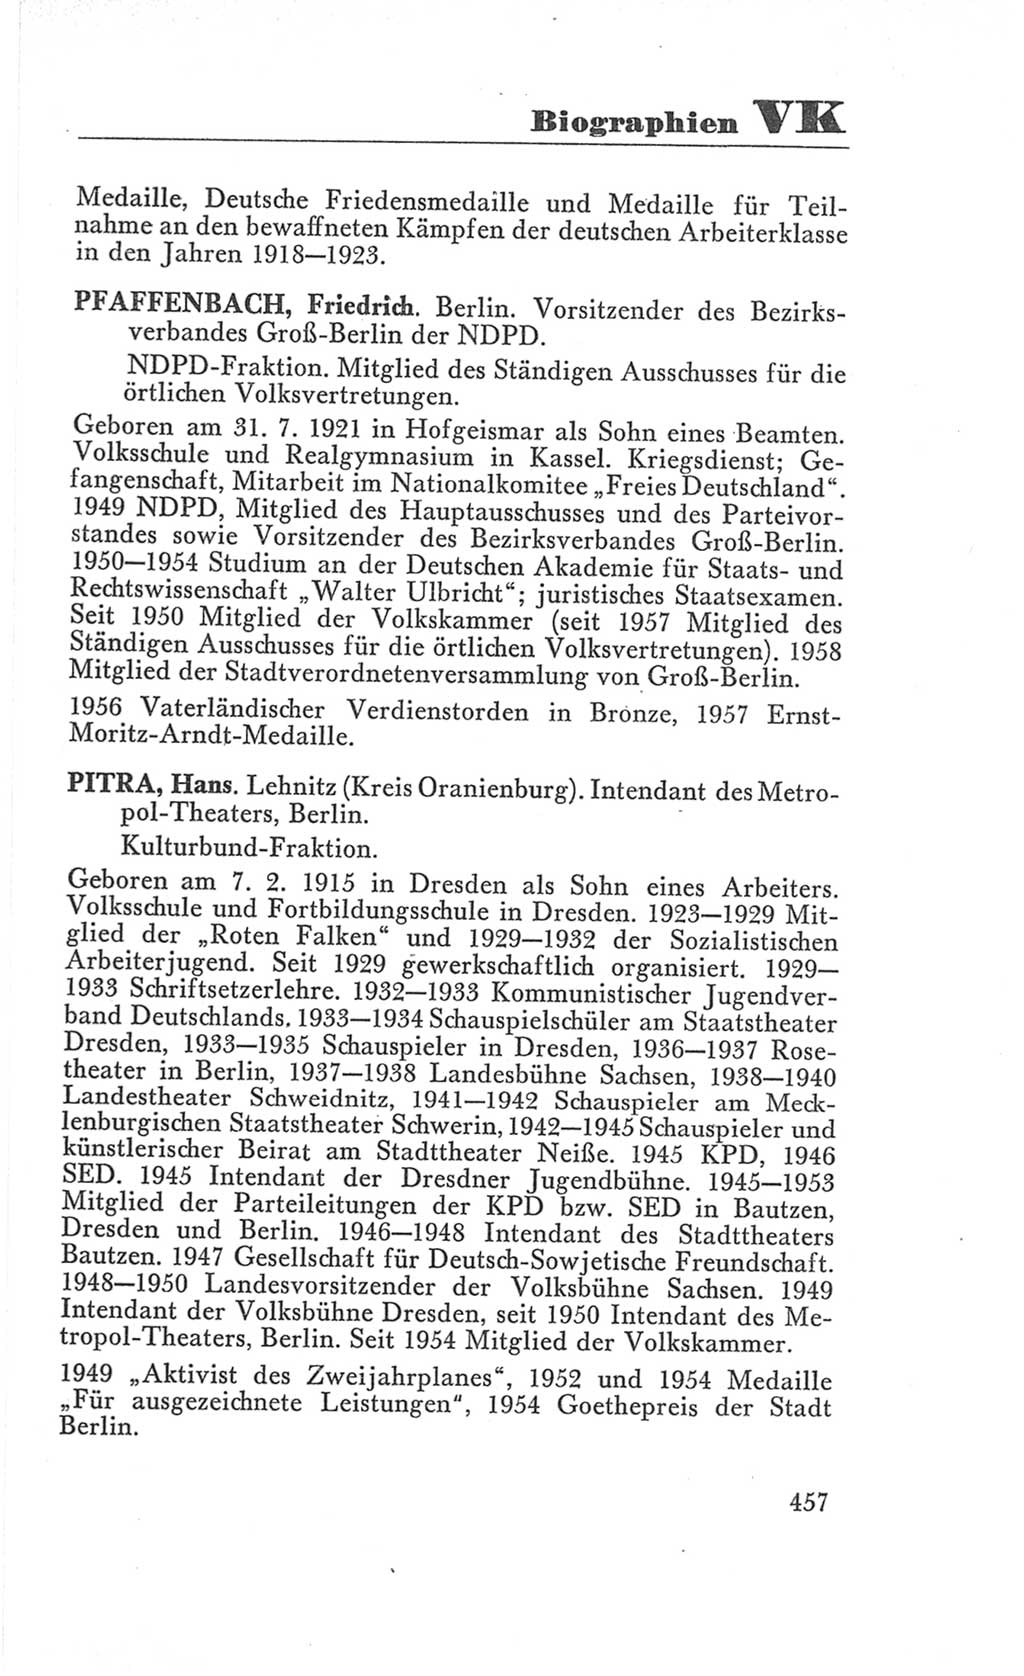 Handbuch der Volkskammer (VK) der Deutschen Demokratischen Republik (DDR), 3. Wahlperiode 1958-1963, Seite 457 (Hdb. VK. DDR 3. WP. 1958-1963, S. 457)